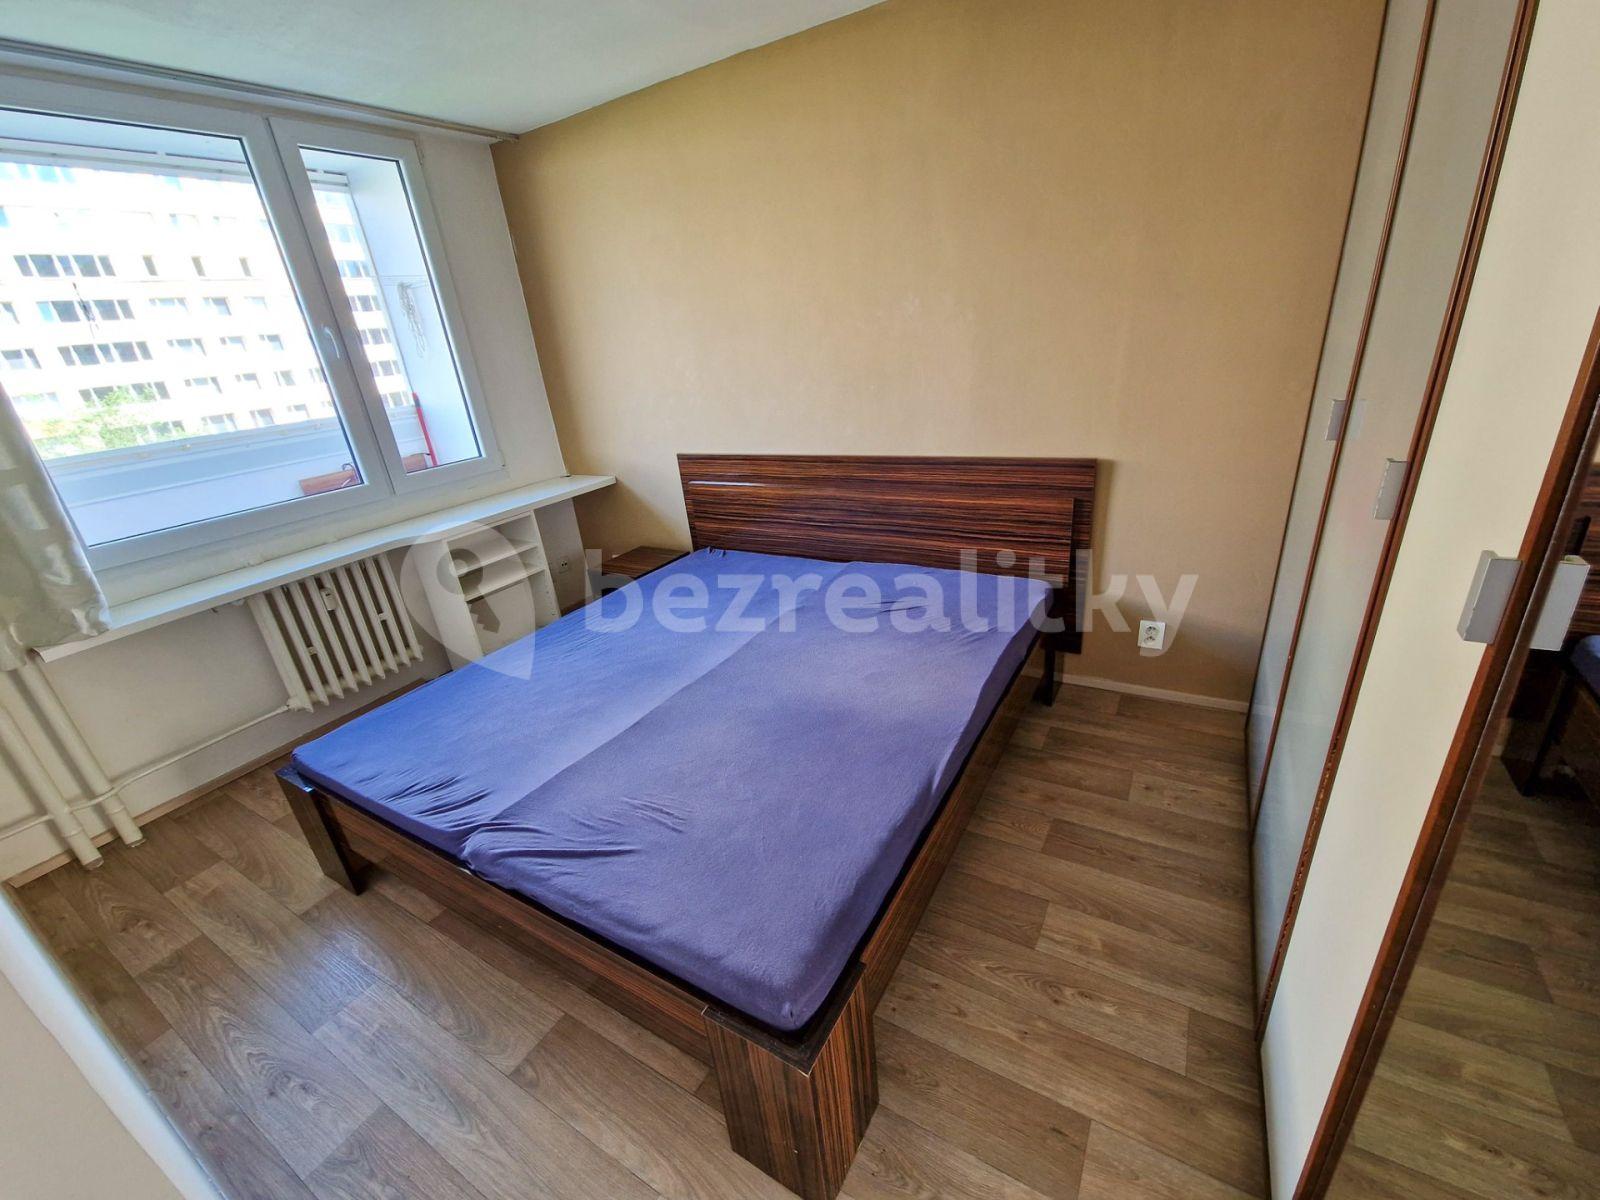 1 bedroom with open-plan kitchen flat to rent, 39 m², Novodvorská, Prague, Prague